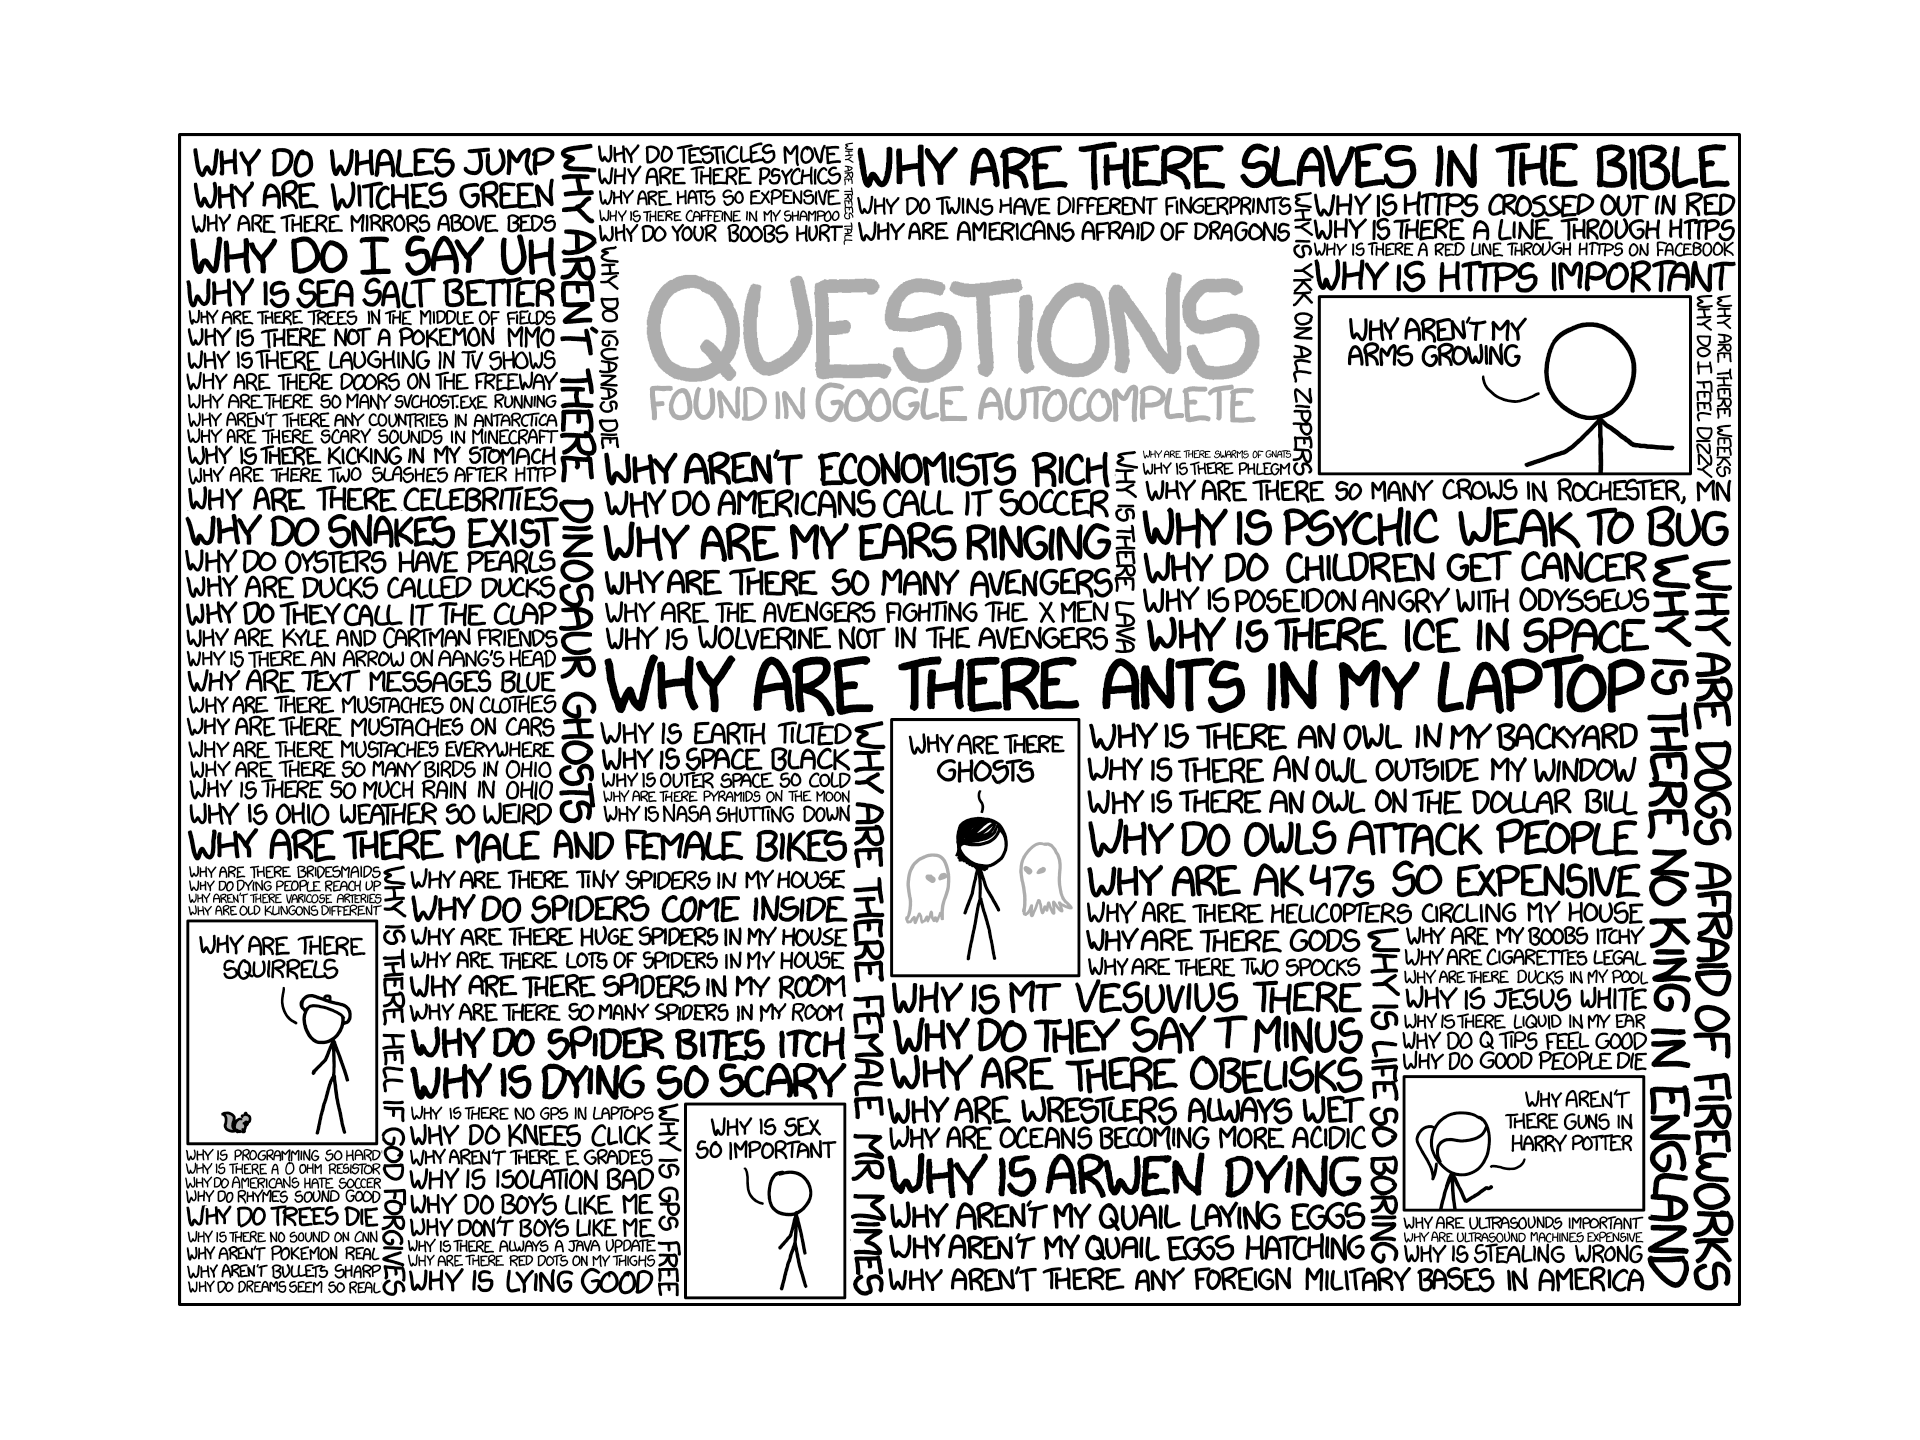 Xkcd Comics Questions Google Internet Humor 1920x1440